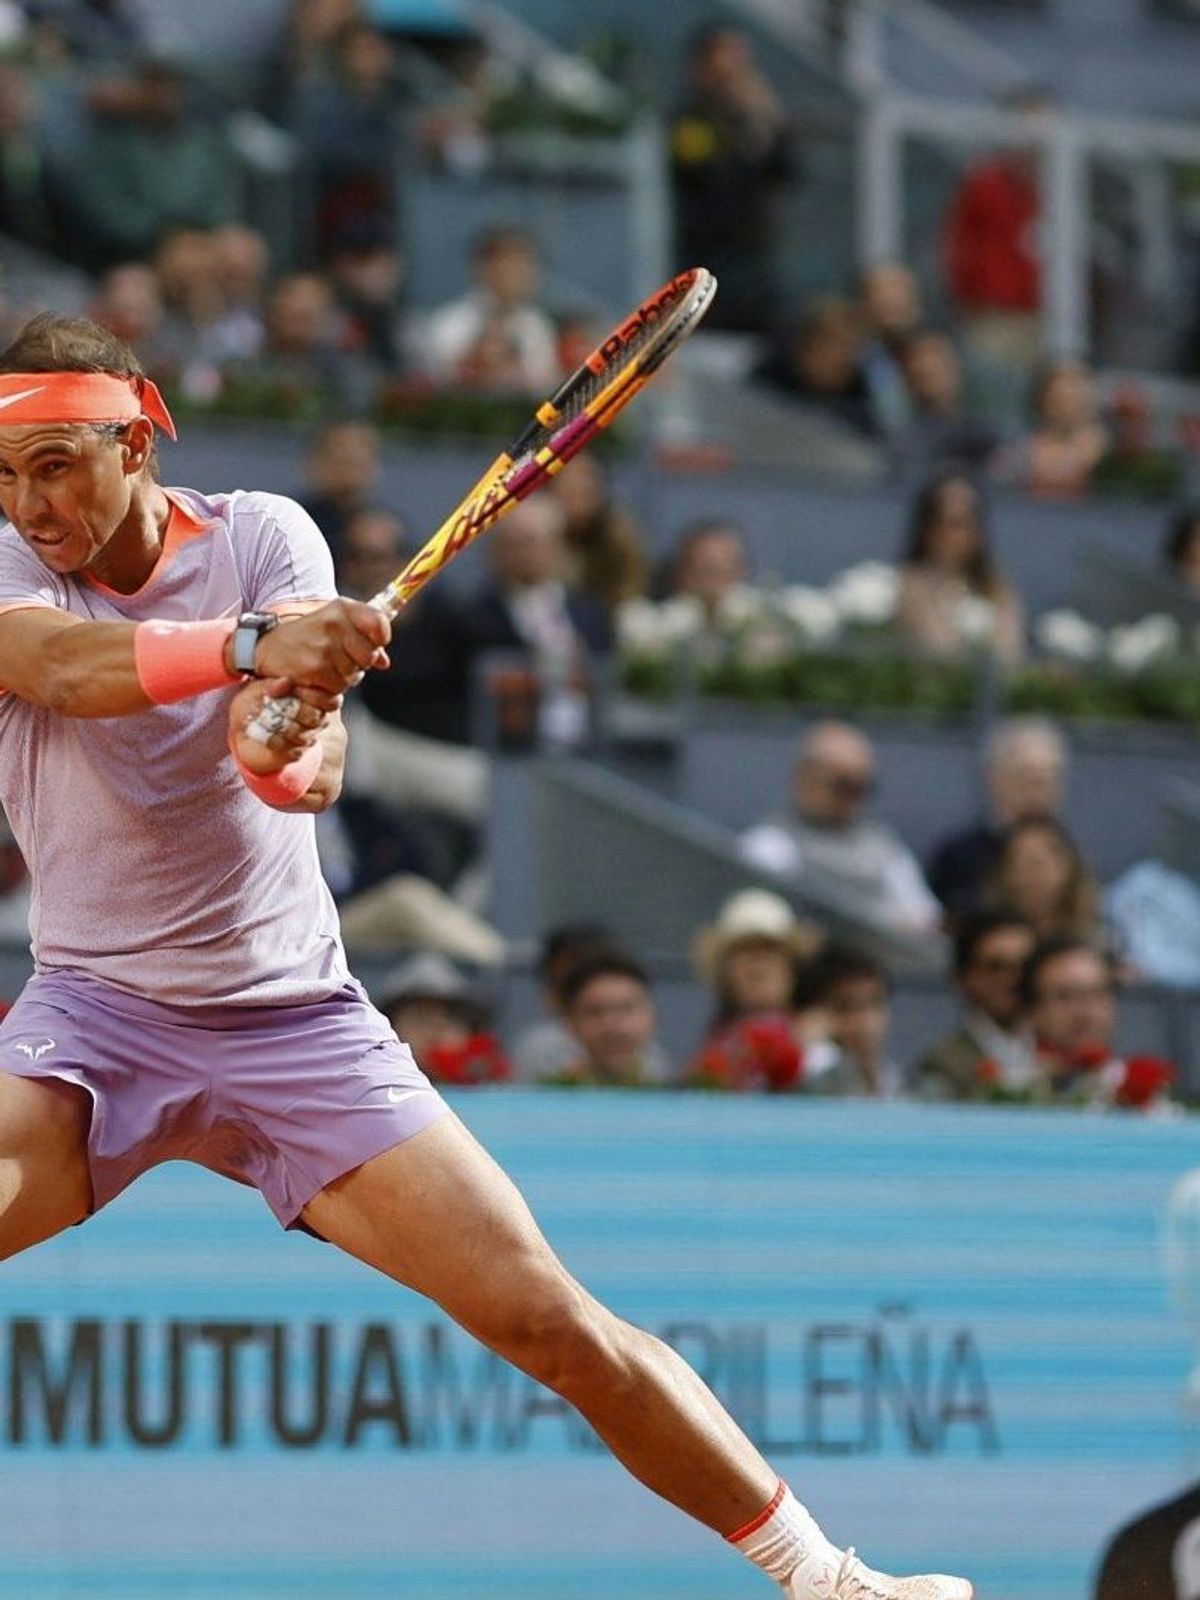 Immernoch eine Attraktion im Tennis-Zirkus: Rafael Nadal